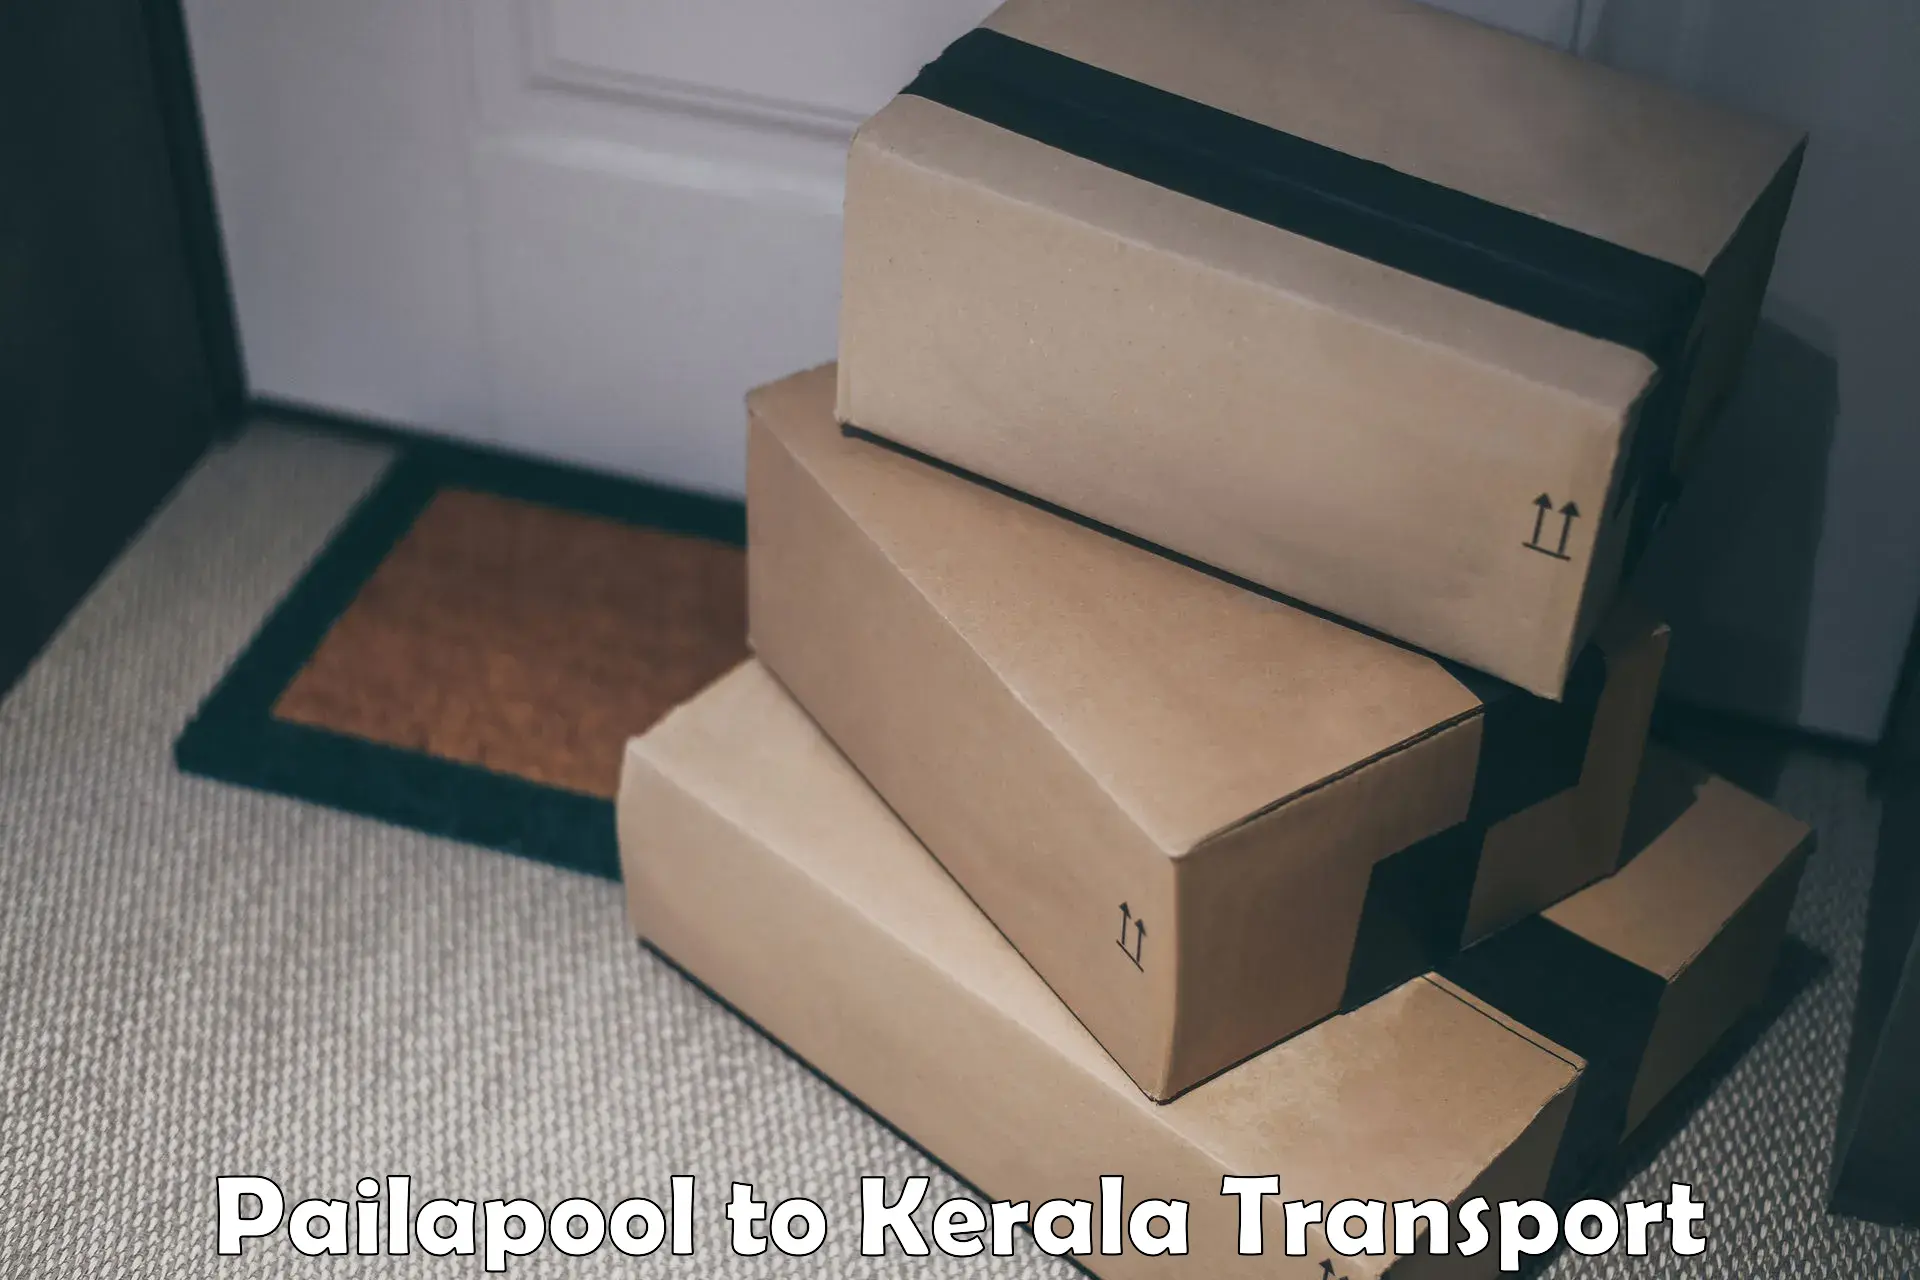 Online transport Pailapool to Karukachal